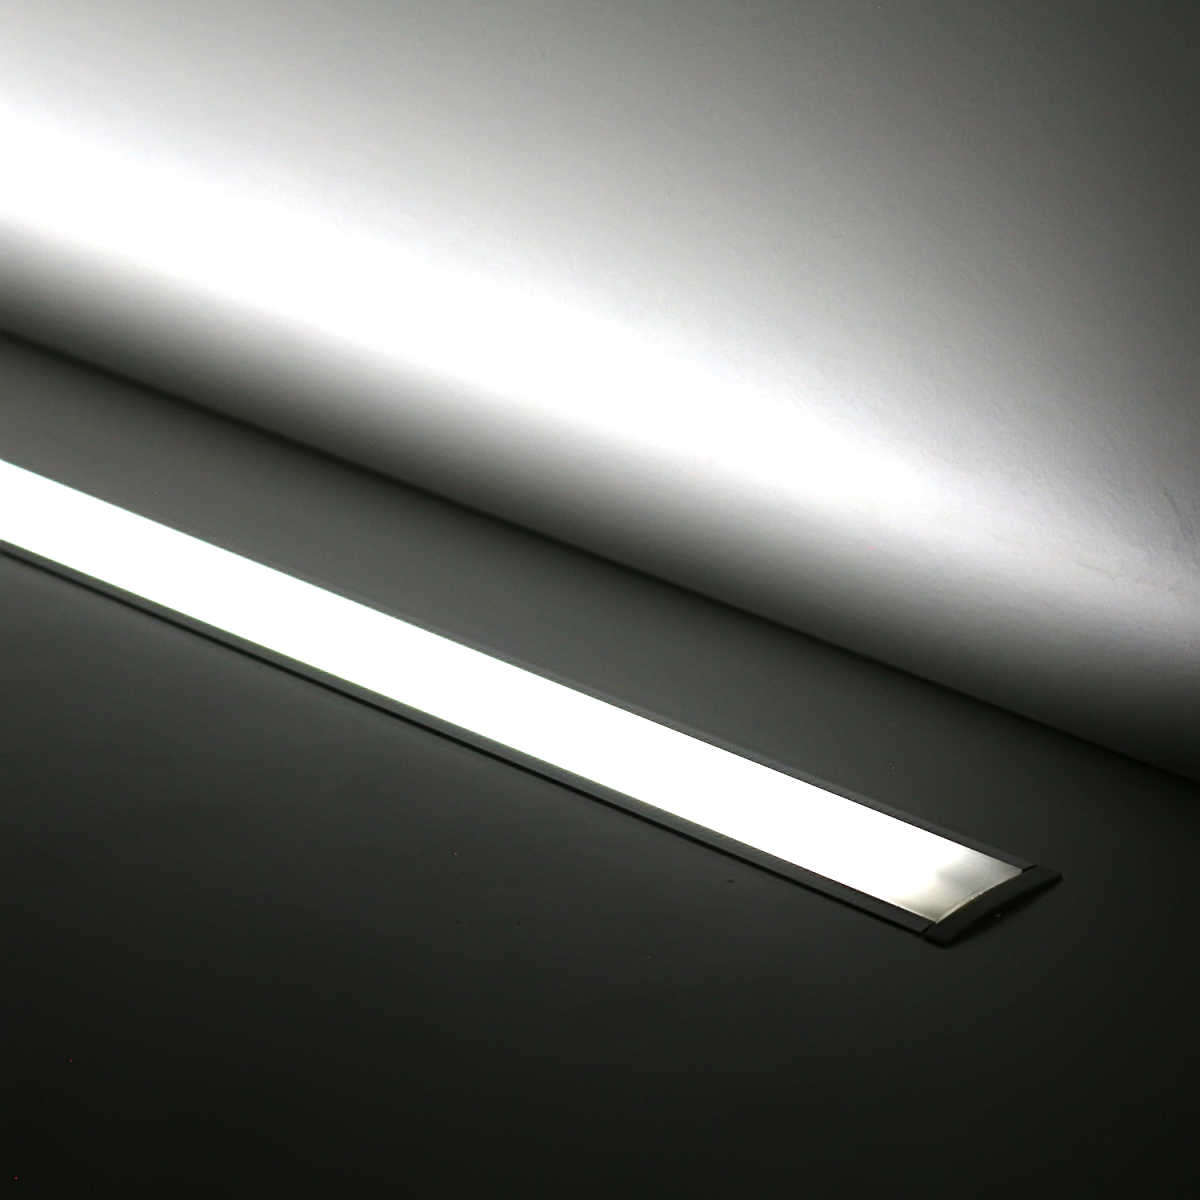 LETGOSPT LED-Streifen 2 Stück LED Innenlichtleiste